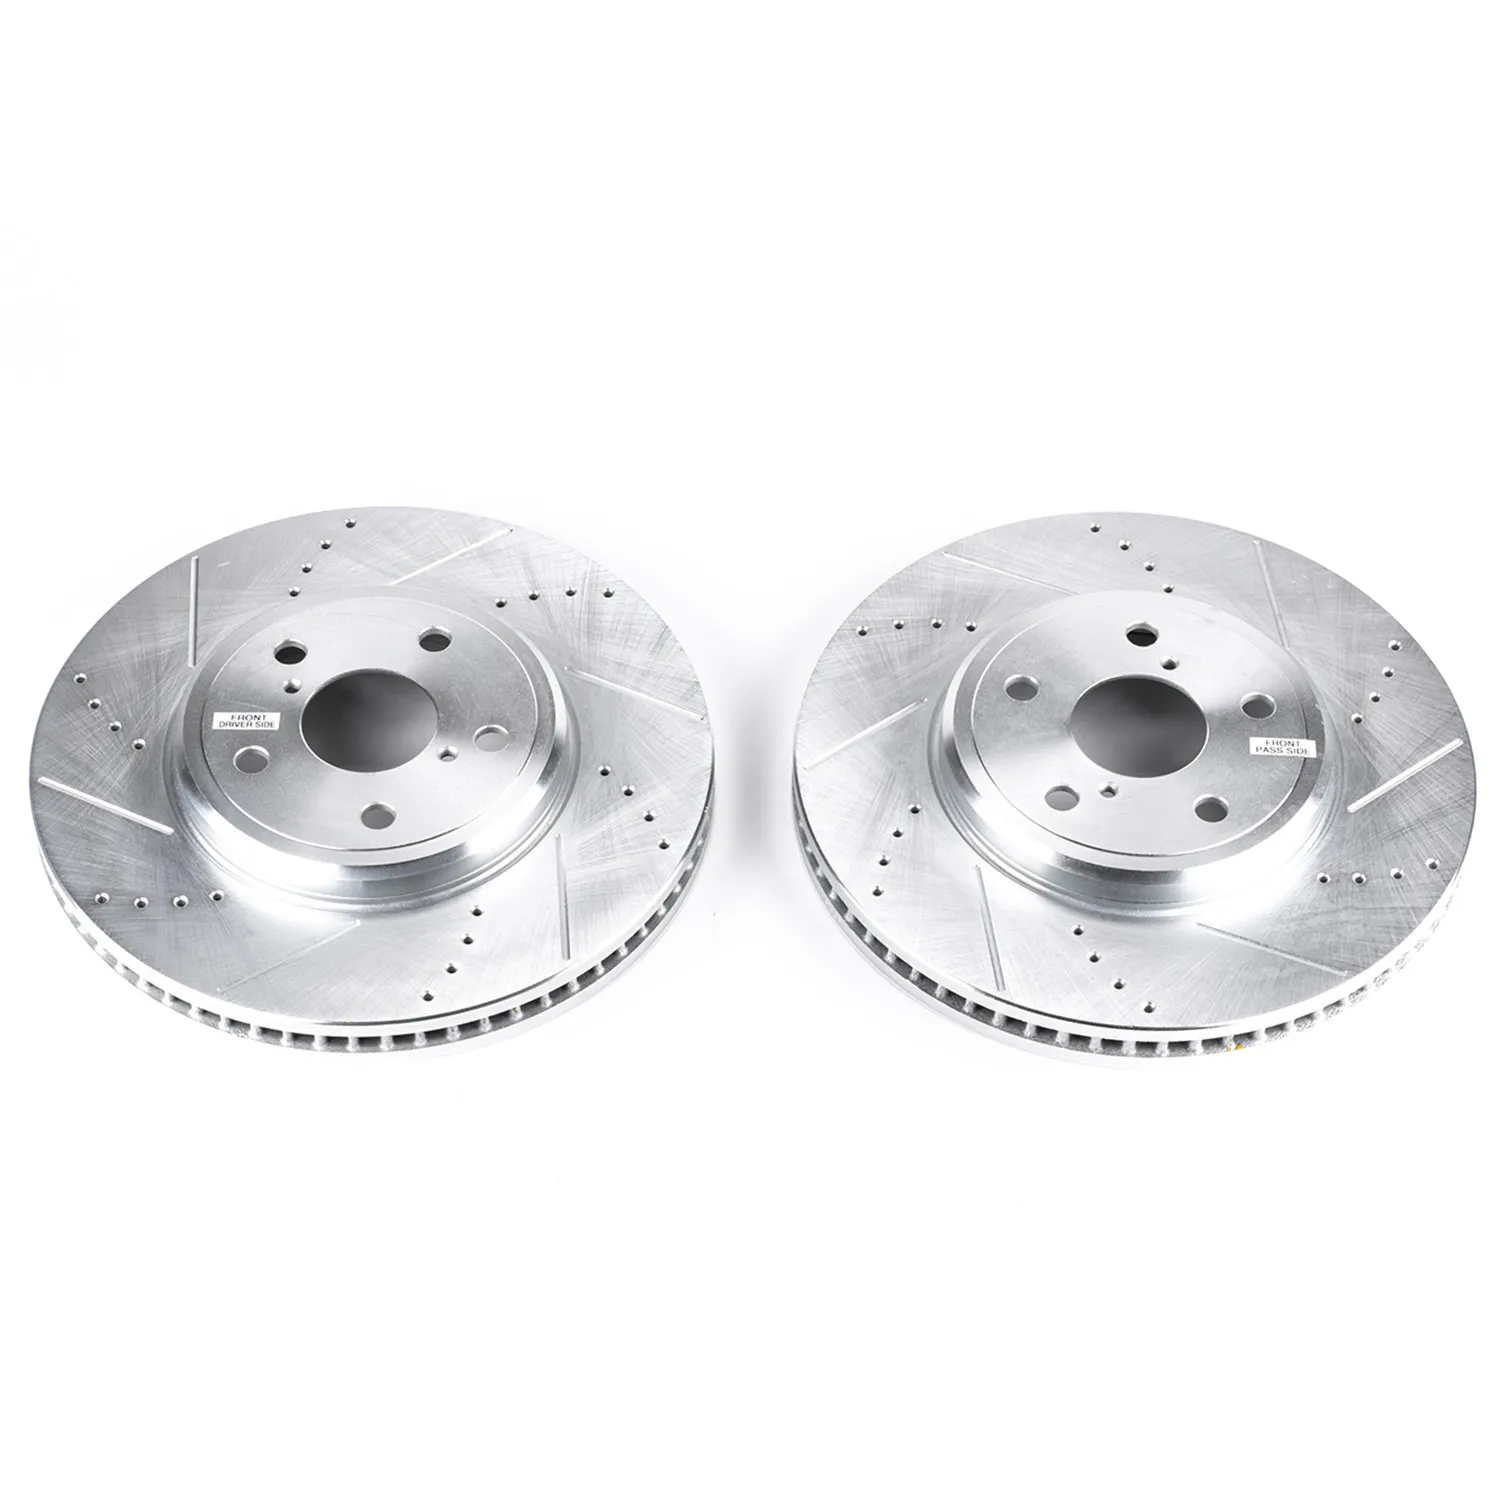 

2 Piece JBR938XPR Top quality wholesale auto brake disc for Lexus